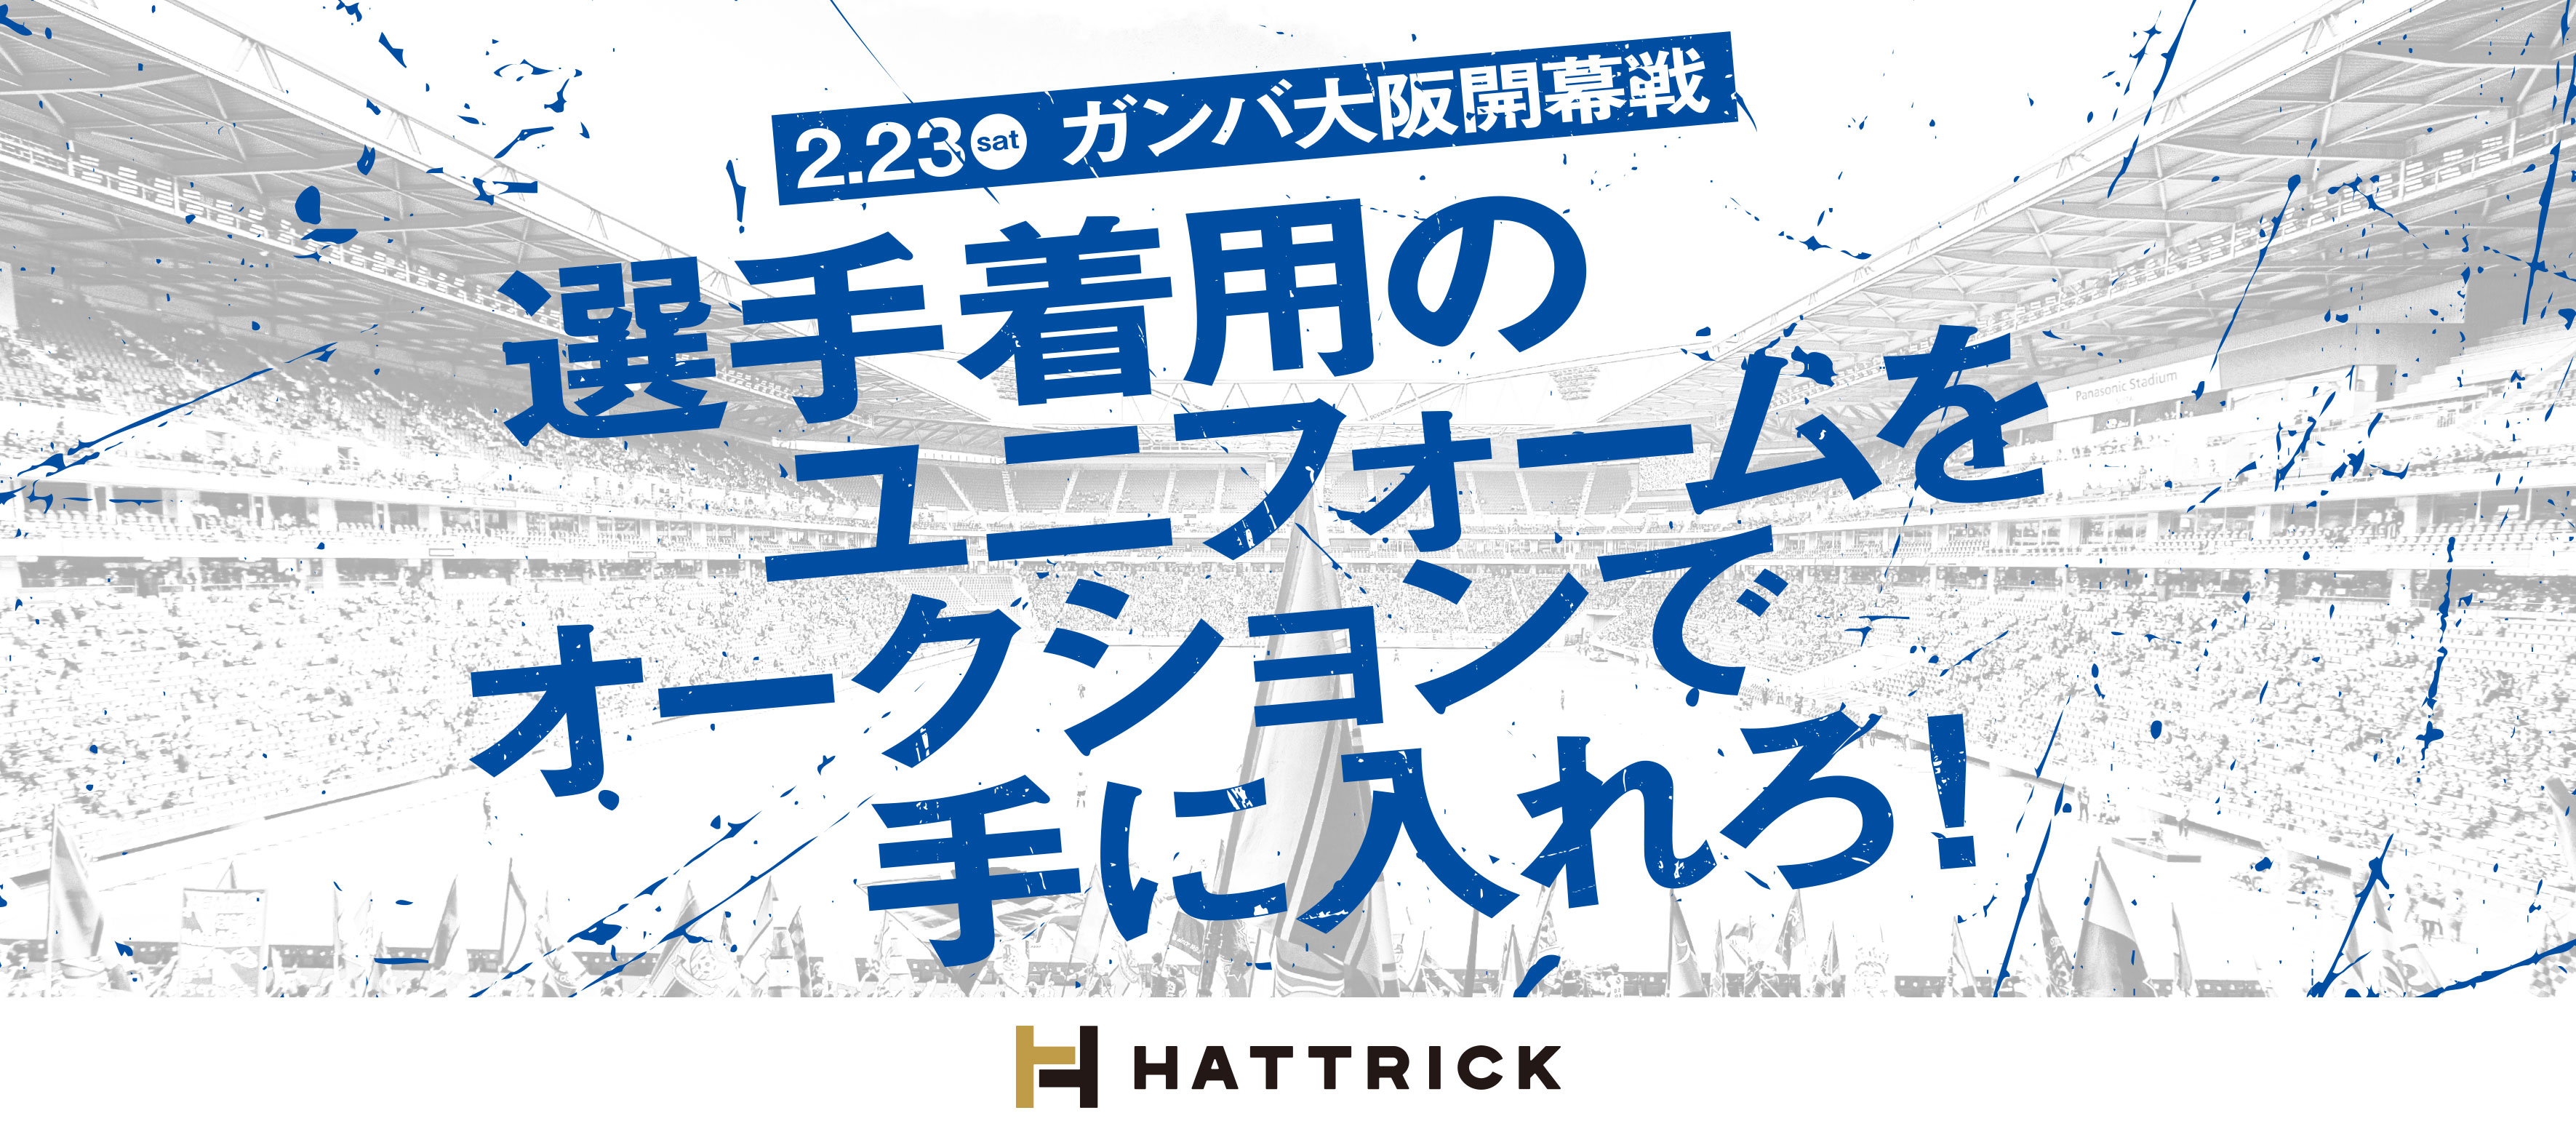 世界に一つのユニフォームをオークションで手に入れろ ガンバ大阪とのコラボ企画 Hattrick 詳細決定 2月23日 土 ガンバ大阪開幕戦 よりいよいよスタート バリュエンスホールディングスのプレスリリース